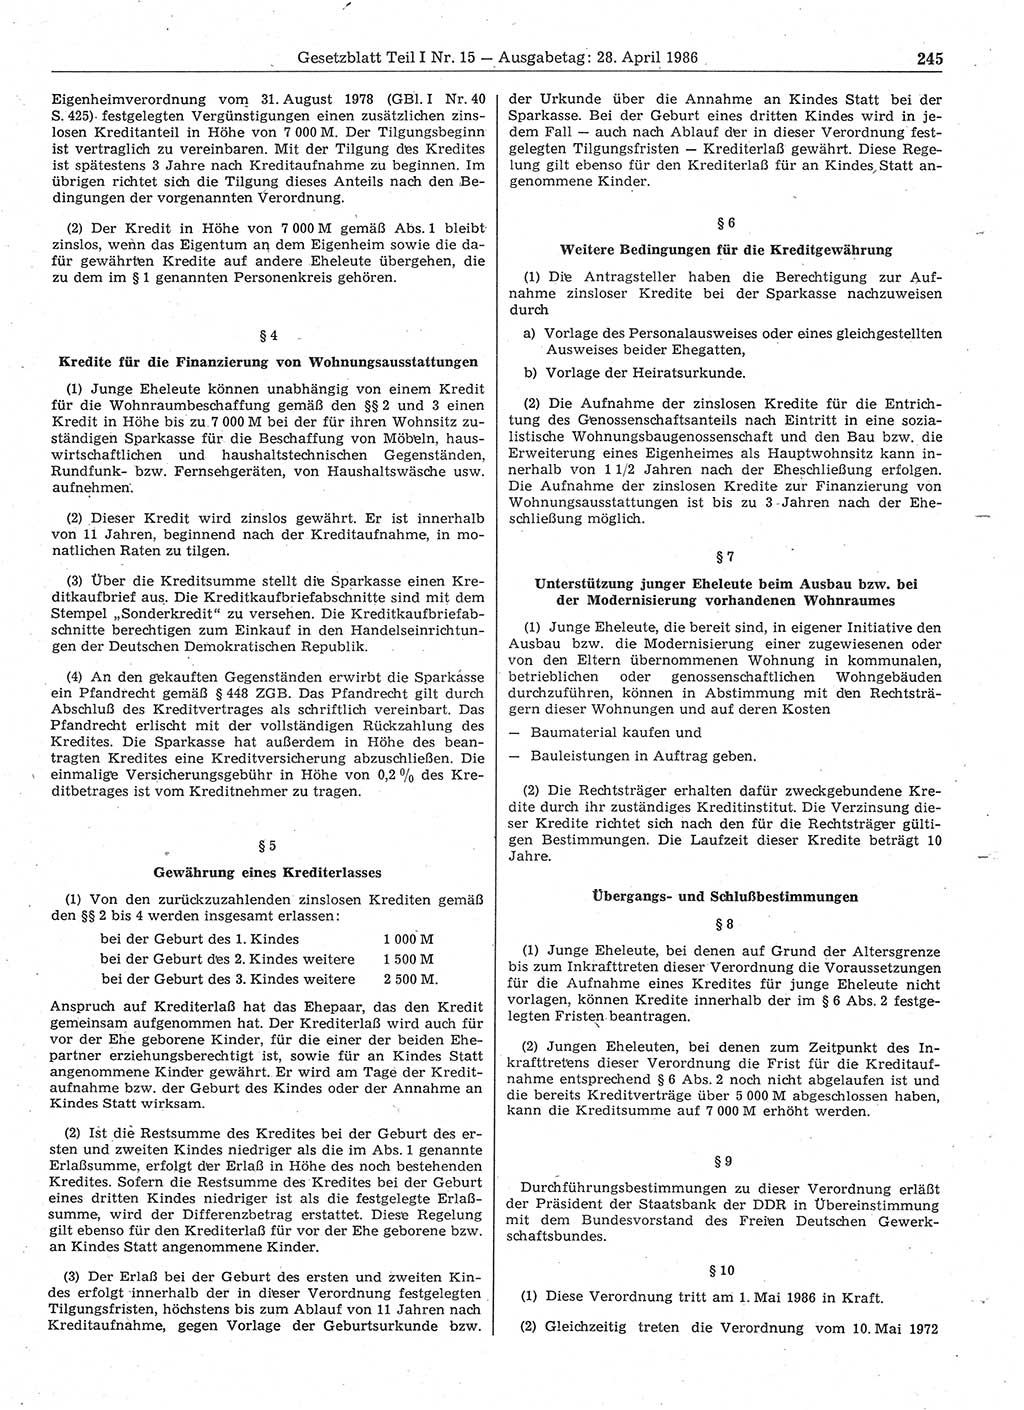 Gesetzblatt (GBl.) der Deutschen Demokratischen Republik (DDR) Teil Ⅰ 1986, Seite 245 (GBl. DDR Ⅰ 1986, S. 245)